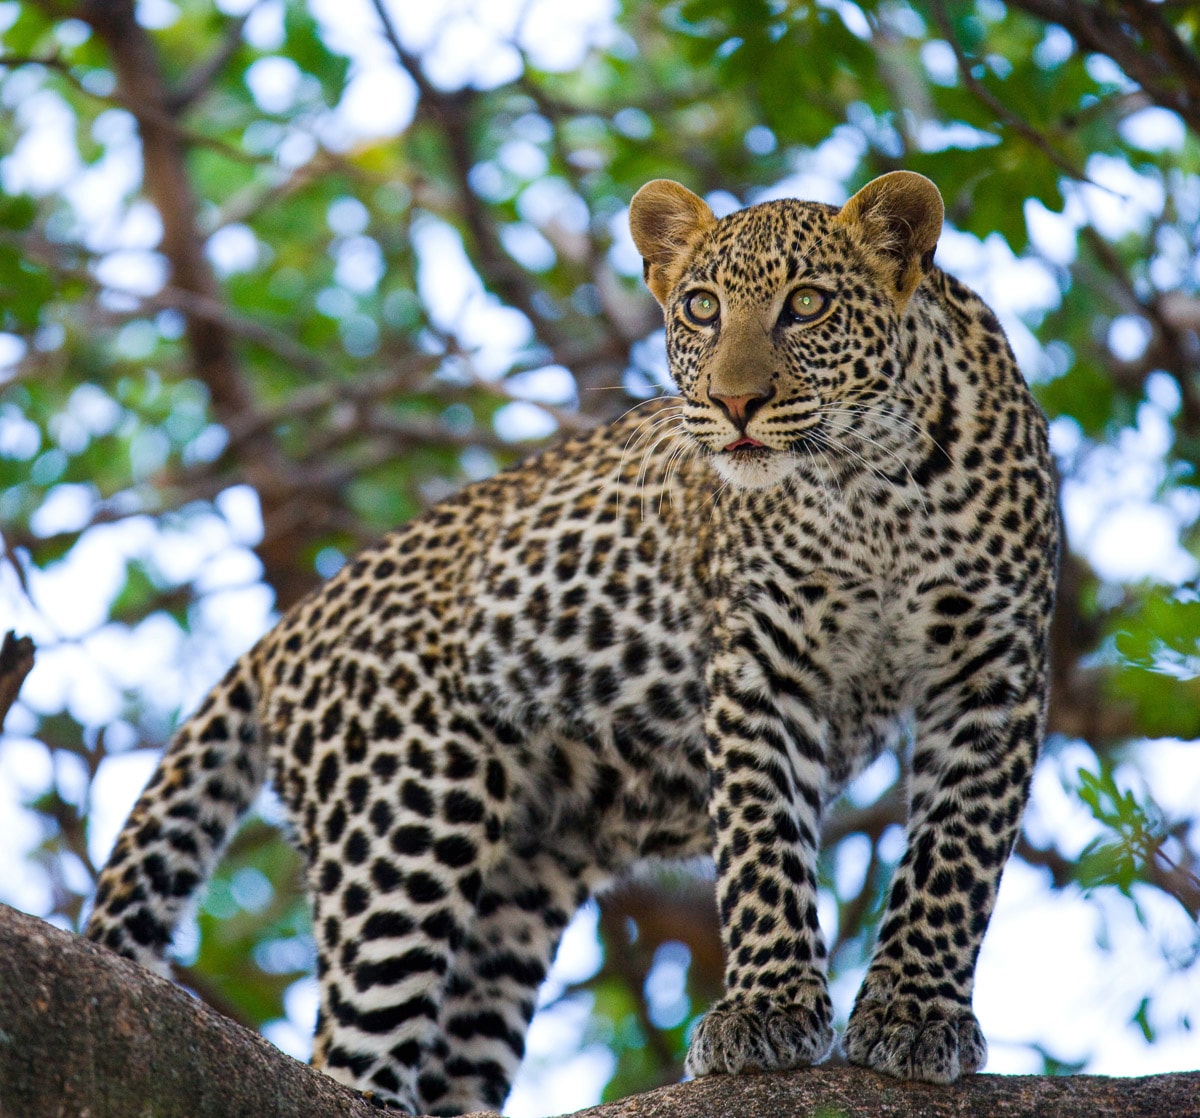 Papermoon Fototapete »Leopard auf dem Baum«